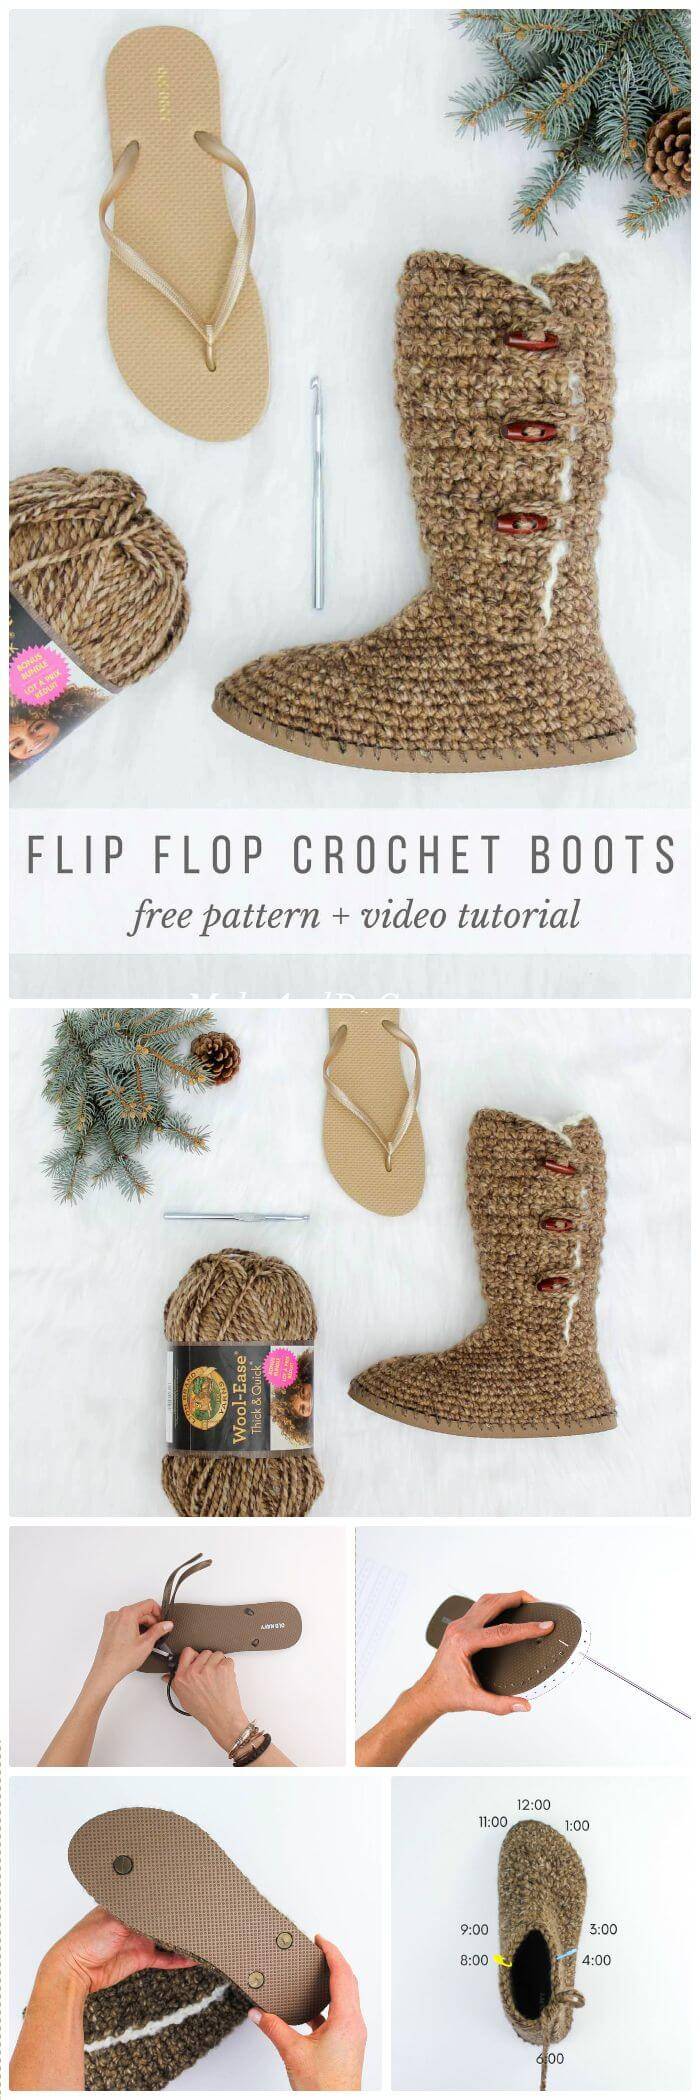 crochet boots with flip flops